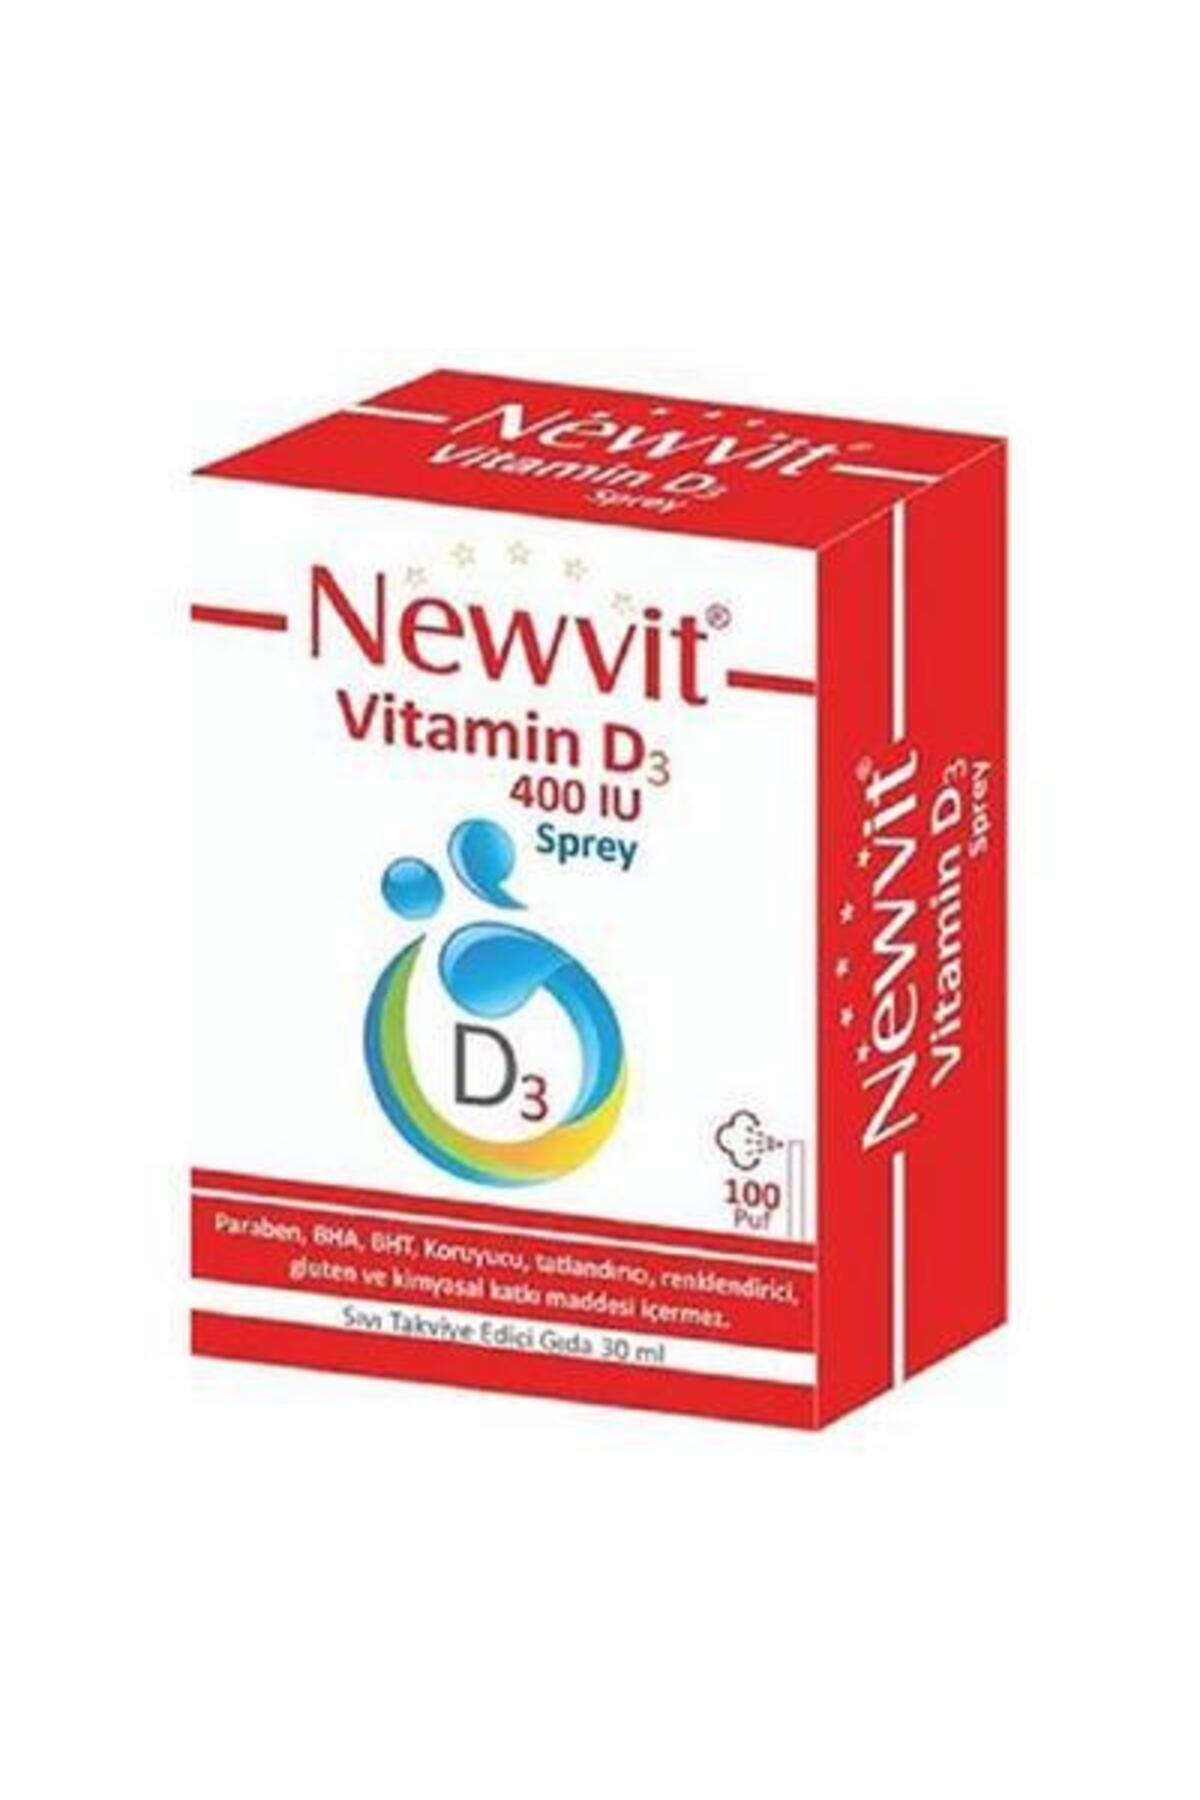 Newvit Vitamin D3 400 Iu 30 ml Sprey